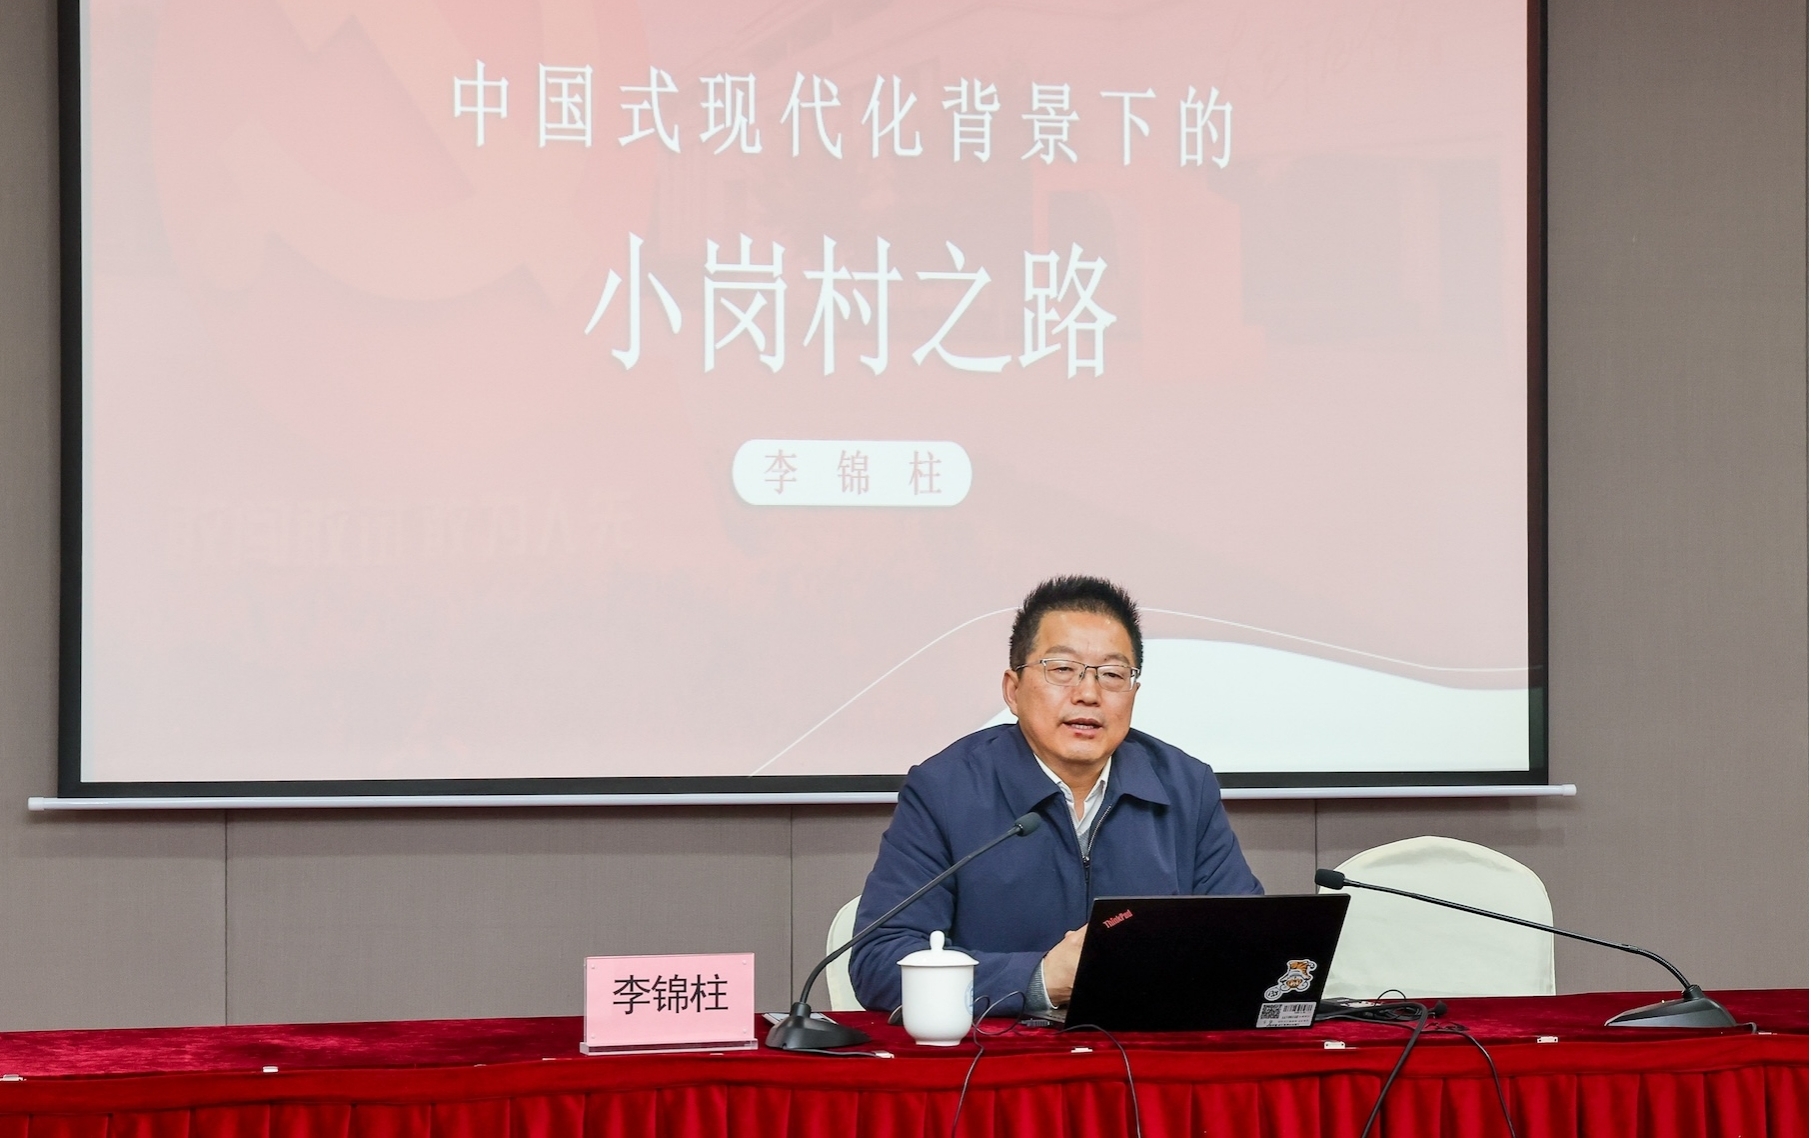 李锦柱走进上海对外经贸大学开展社科大巡讲。贾贵摄